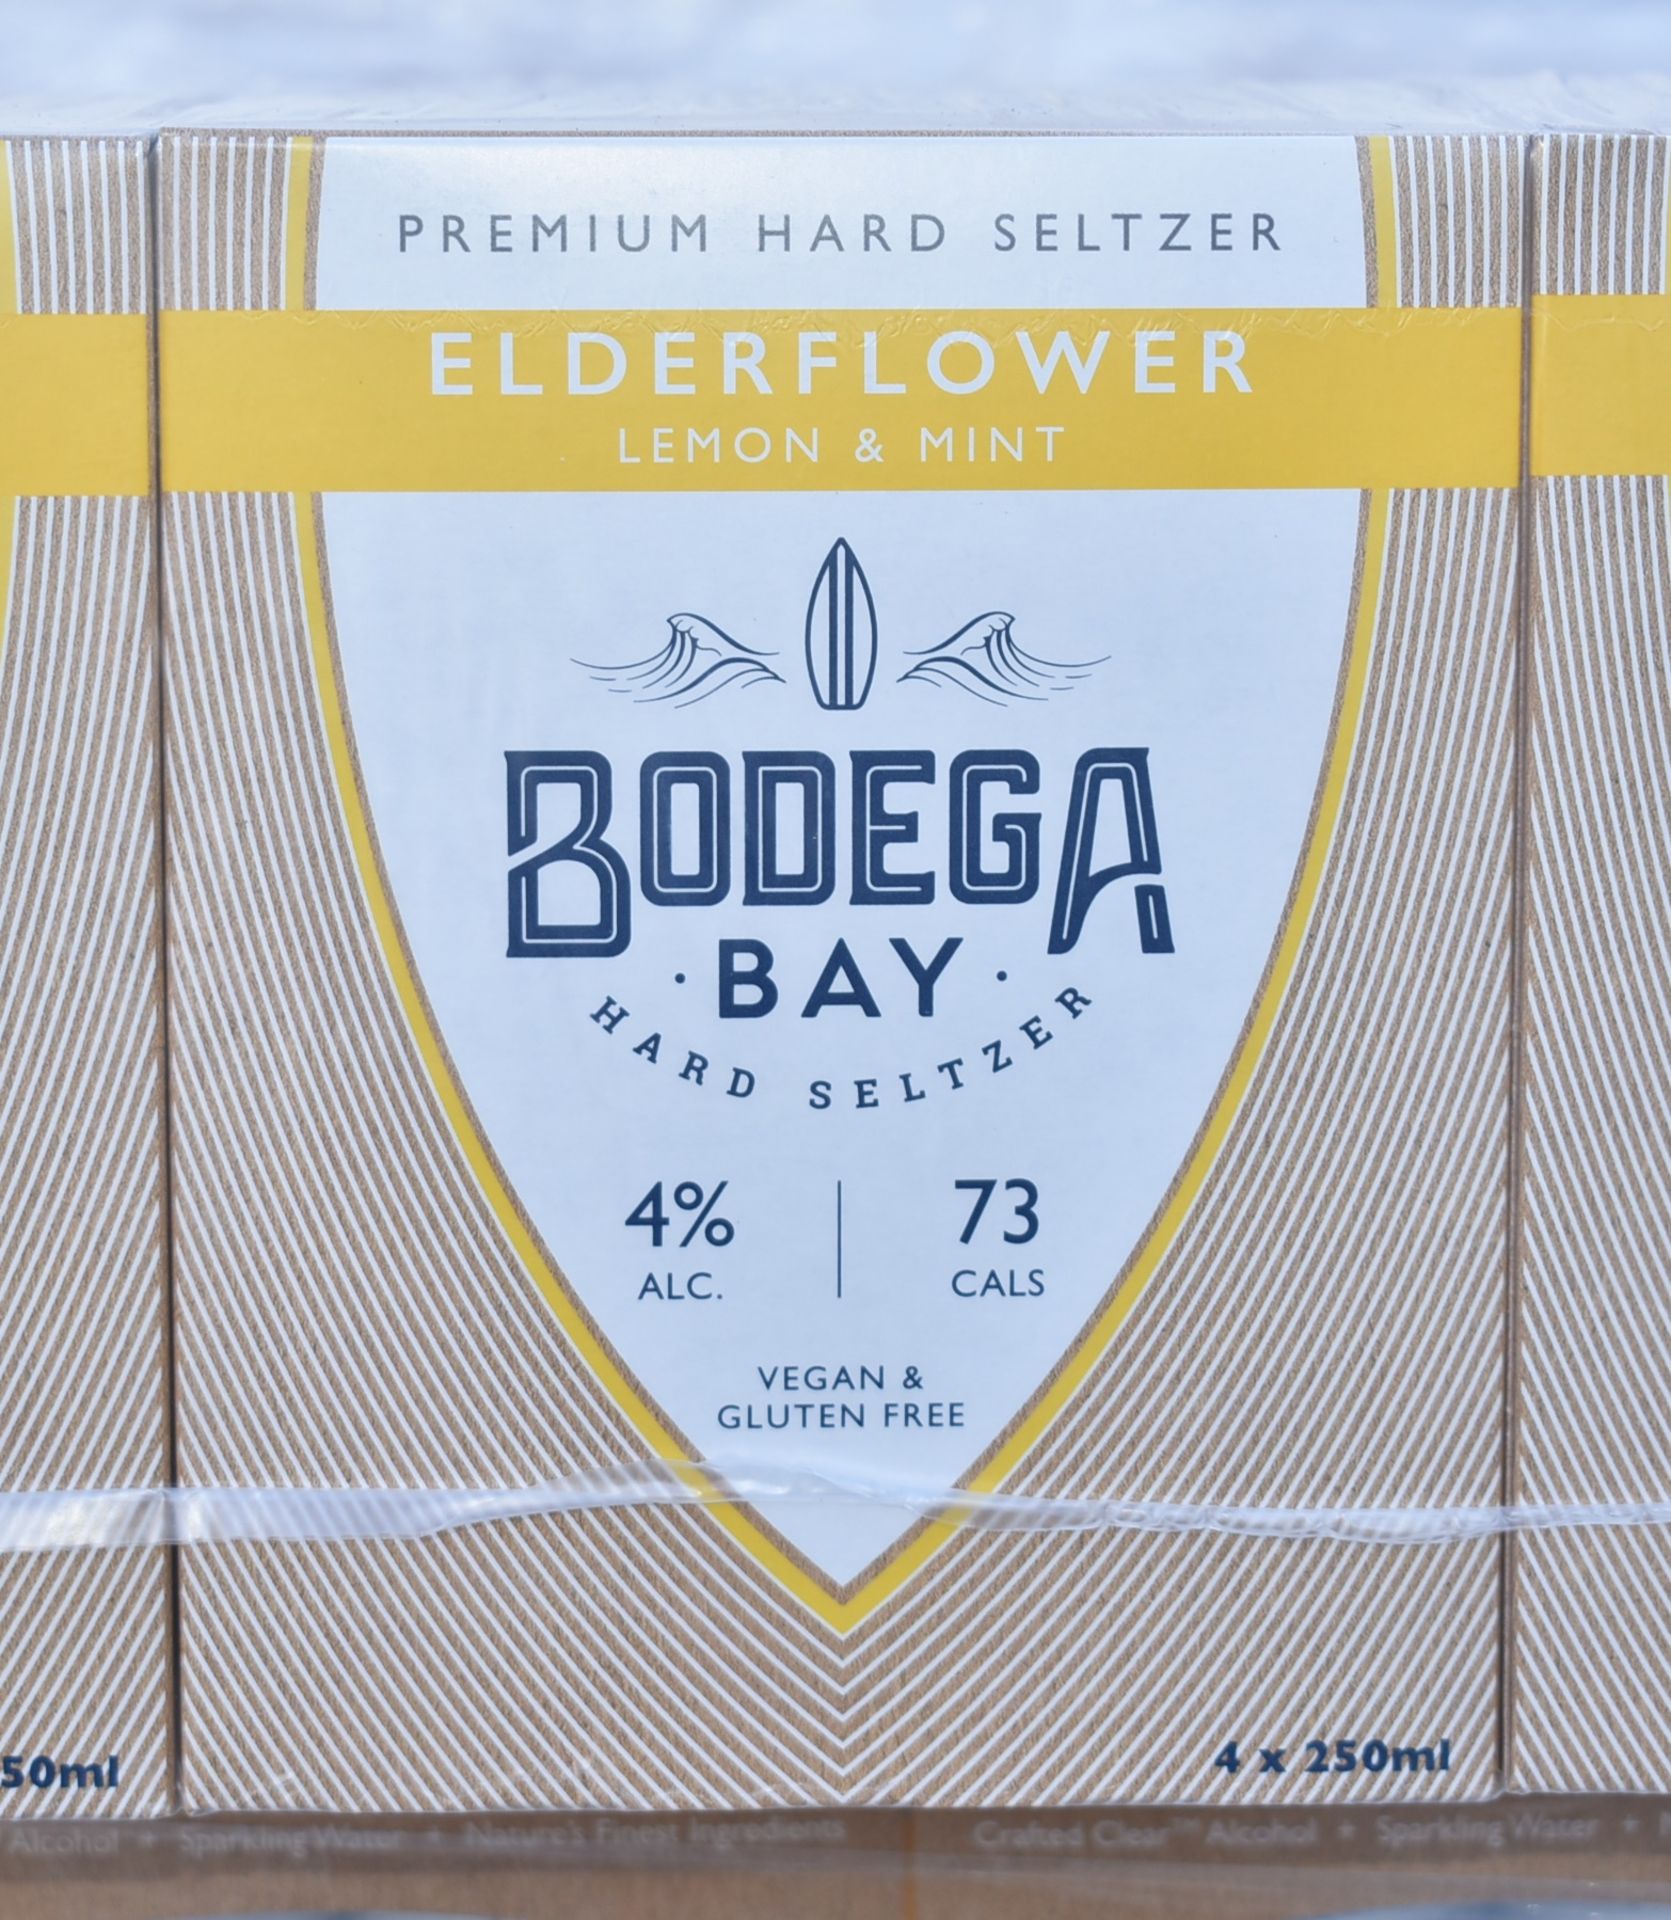 24 x Bodega Bay Hard Seltzer 250ml Alcoholic Sparkling Water Drinks - Elderflower Lemon & Mint - - Image 4 of 7